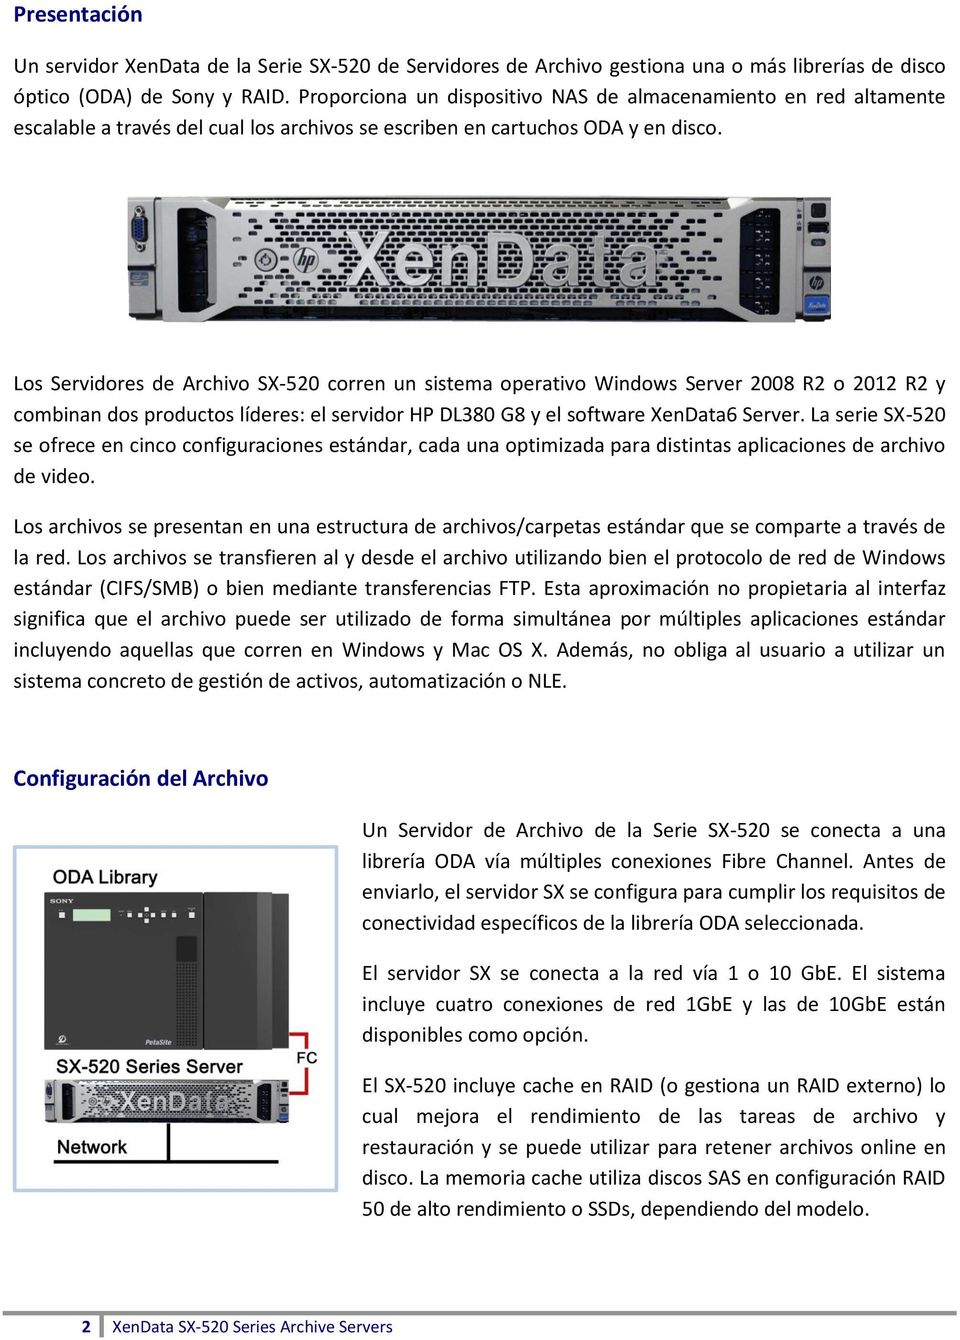 Los Servidores de Archivo SX-520 corren un sistema operativo Windows Server 2008 R2 o 2012 R2 y combinan dos productos líderes: el servidor HP DL380 G8 y el software XenData6 Server.